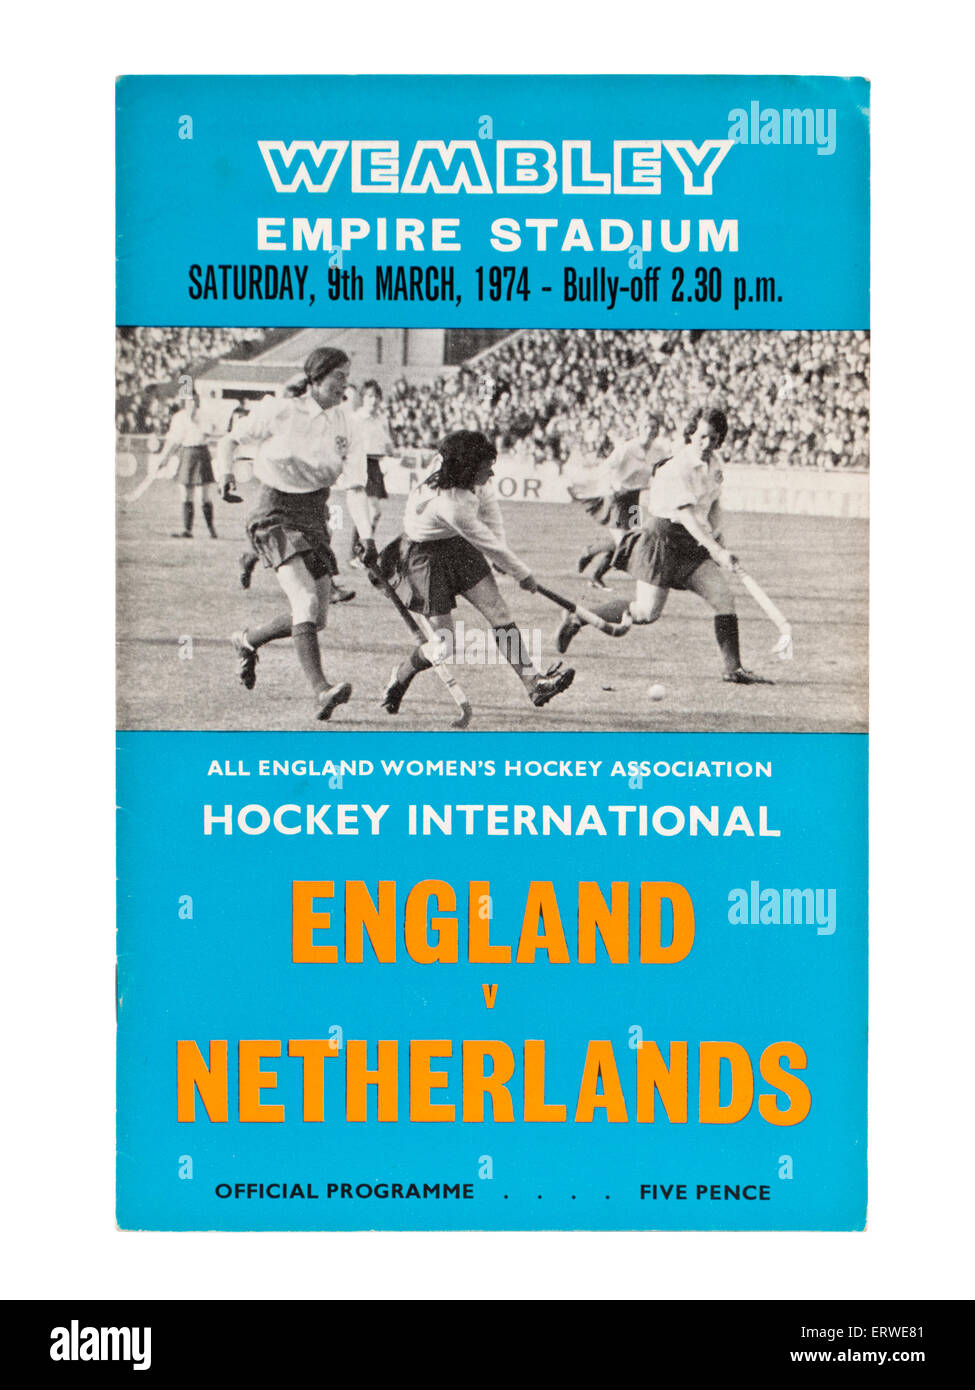 Programa de Inglaterra versus Holanda internacional de hockey en Wembley Empire Stadium el 9 de marzo de 1974. Foto de stock